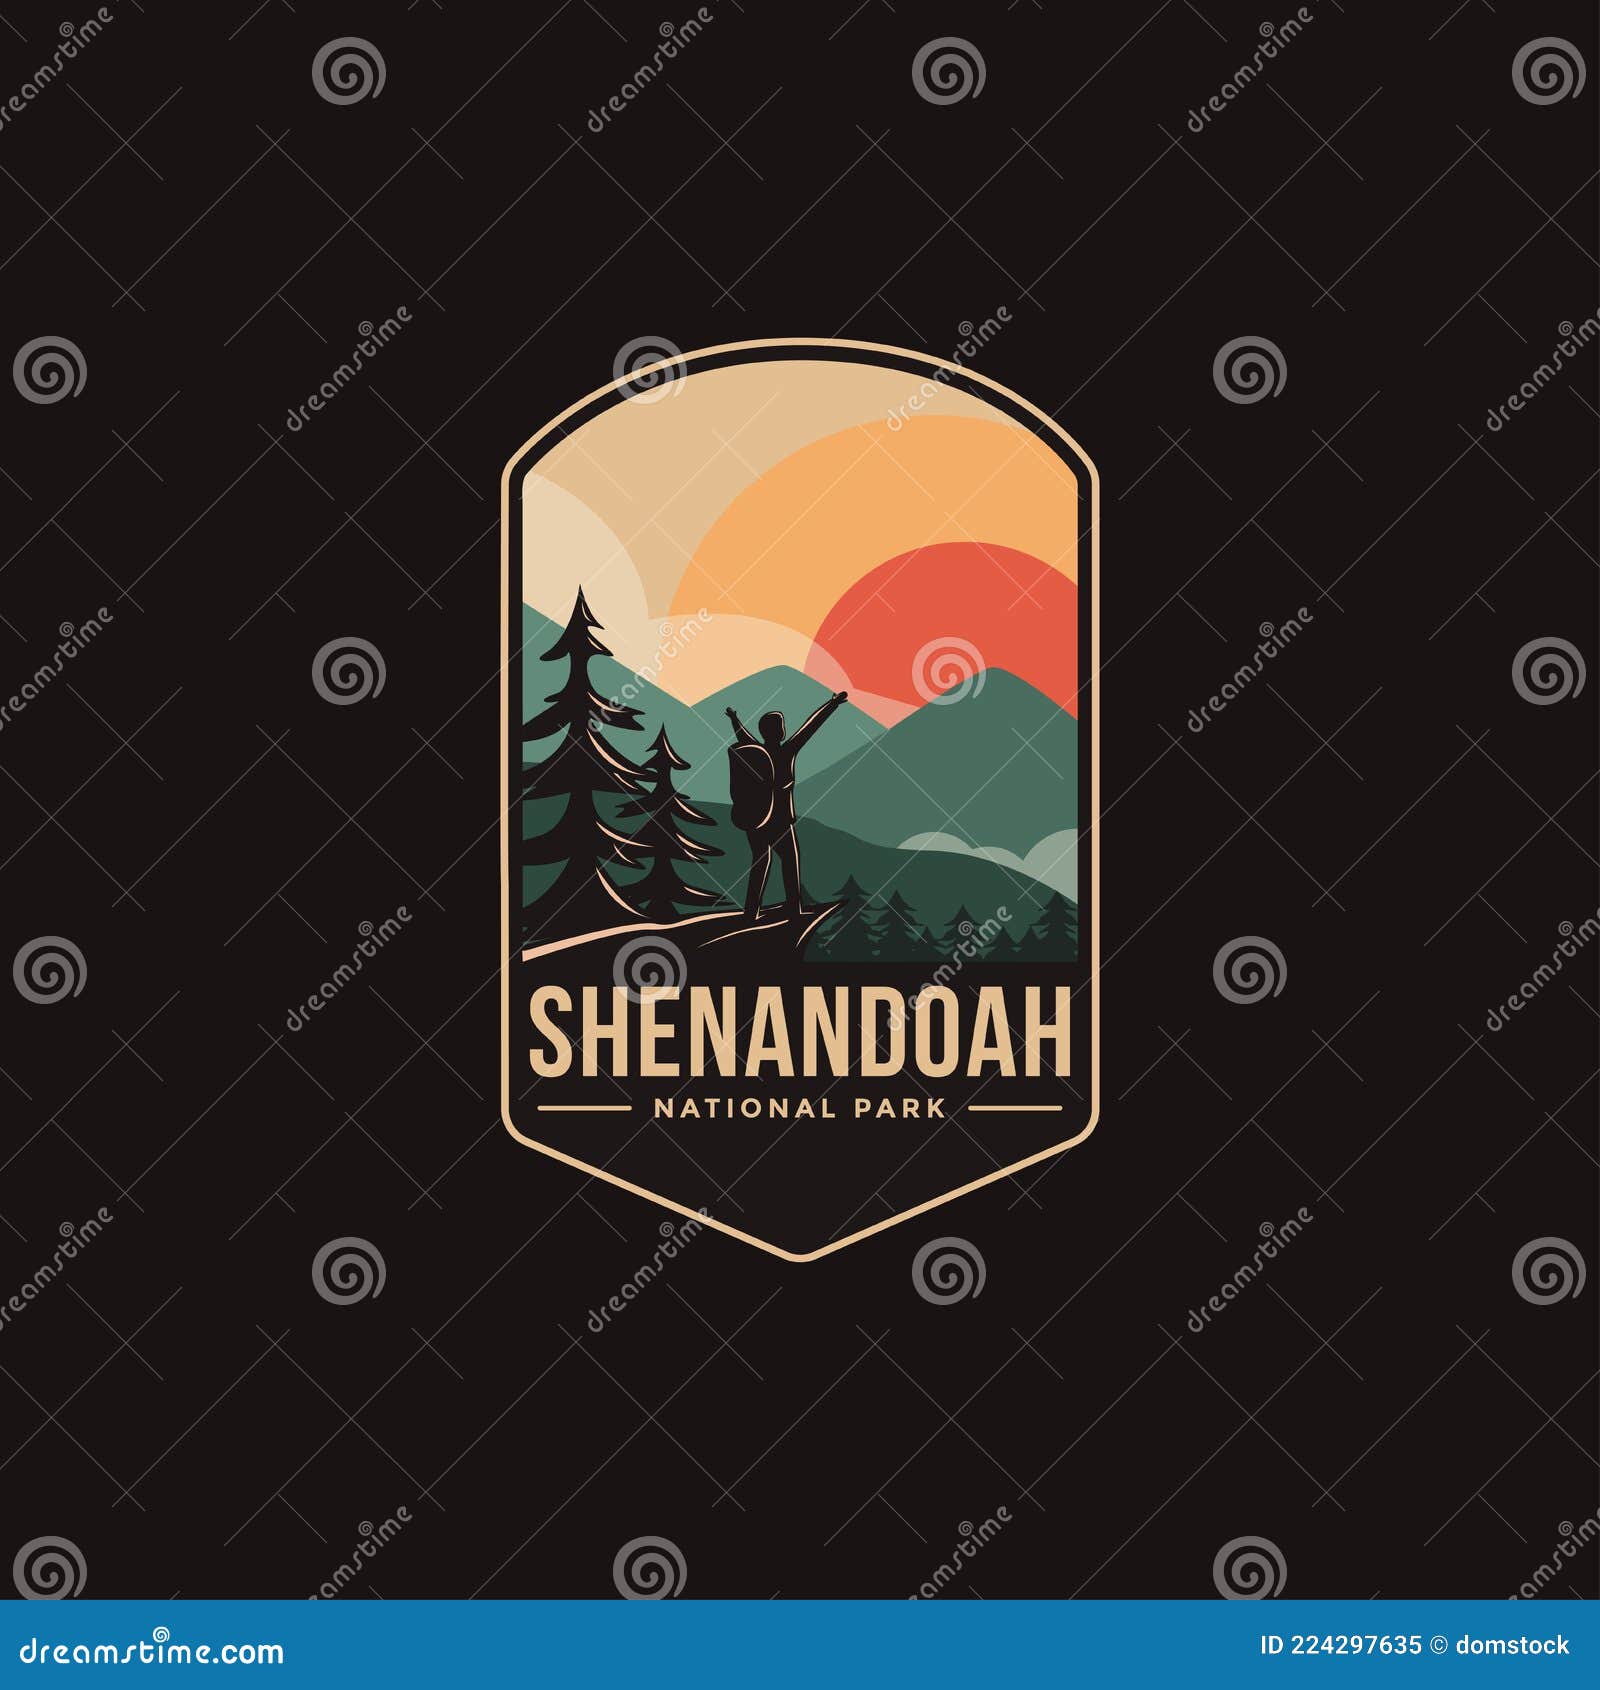 emblem patch logo  of shenandoah national park